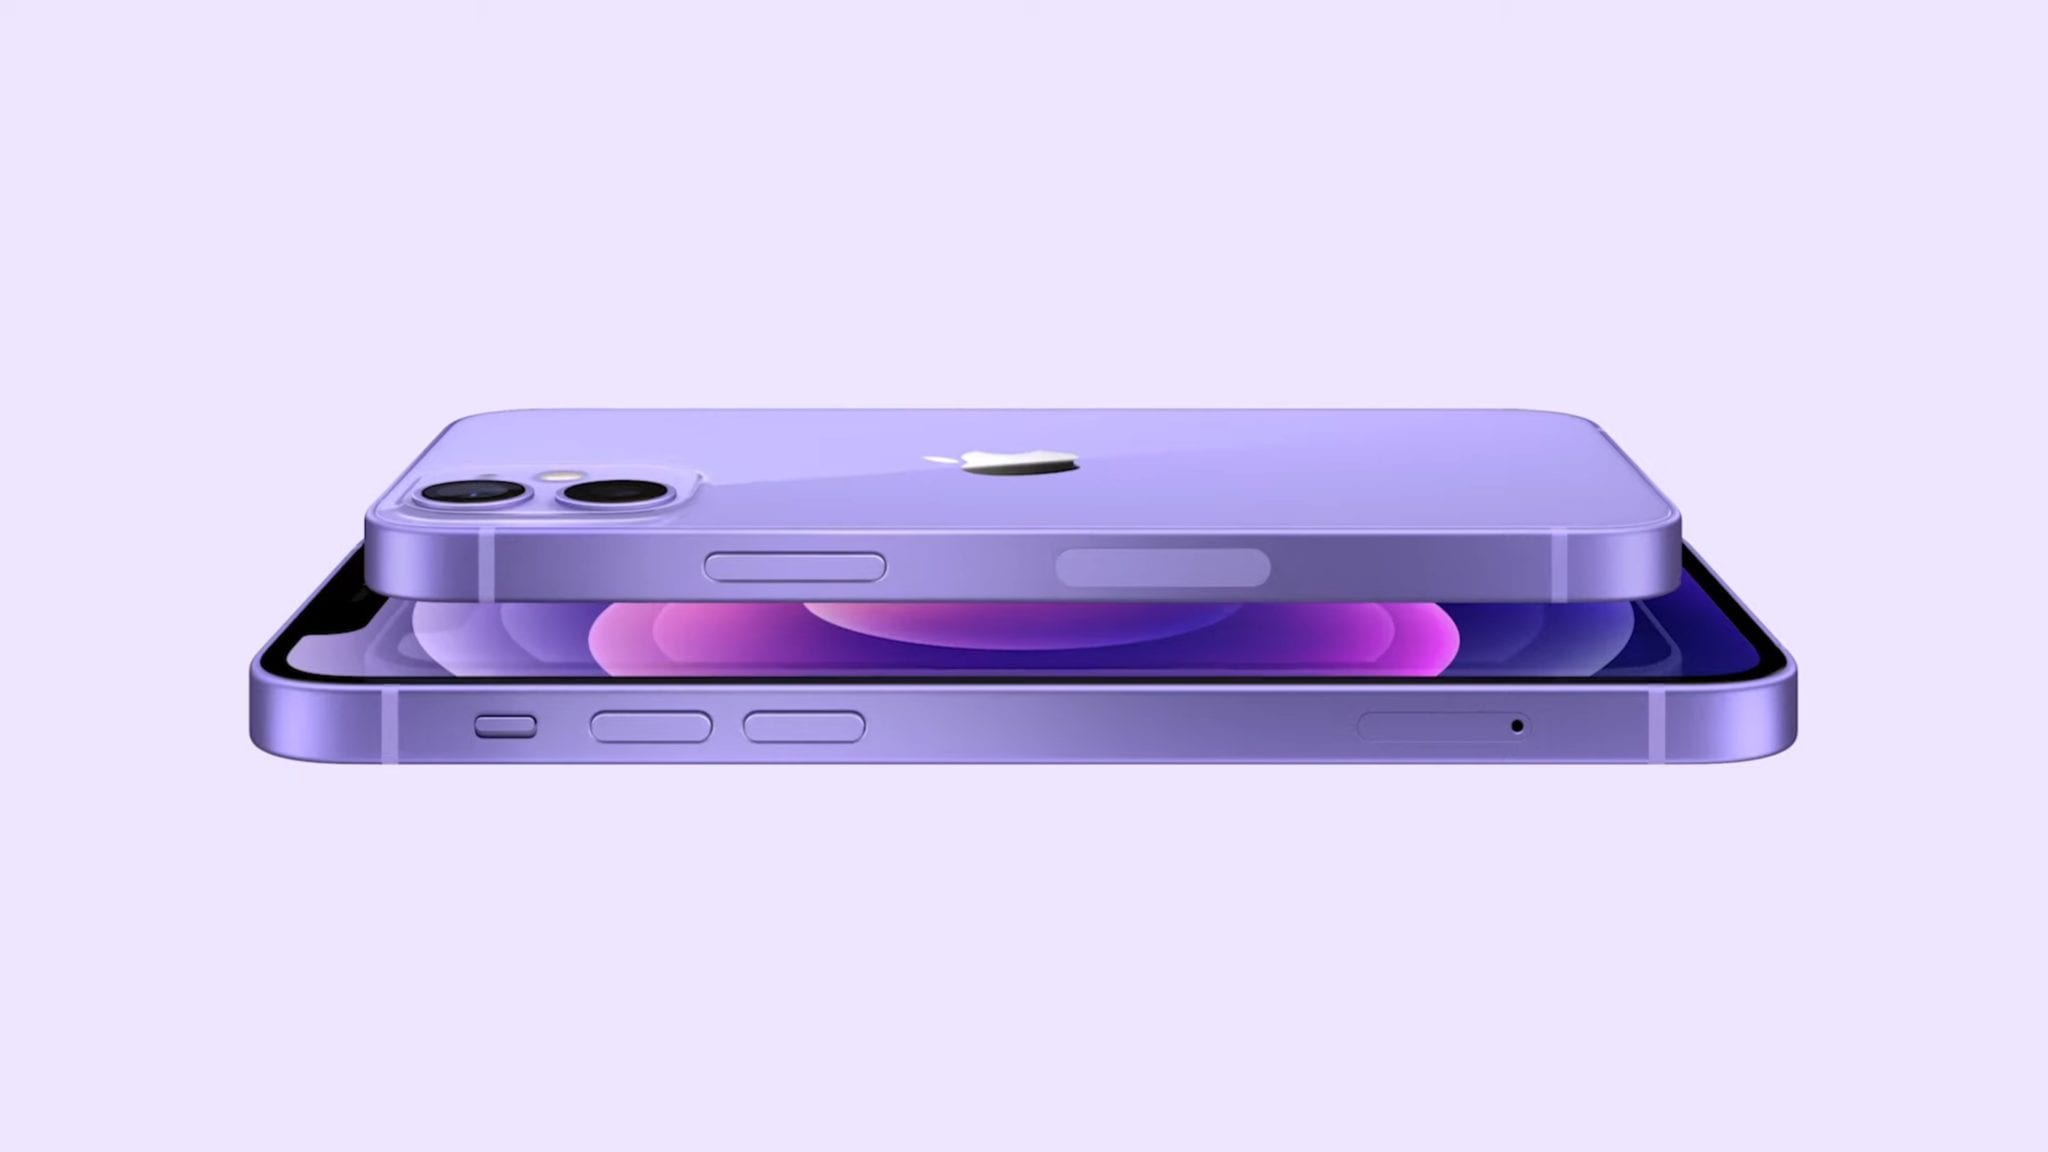 Nuevo color purpura para los iPhone 12